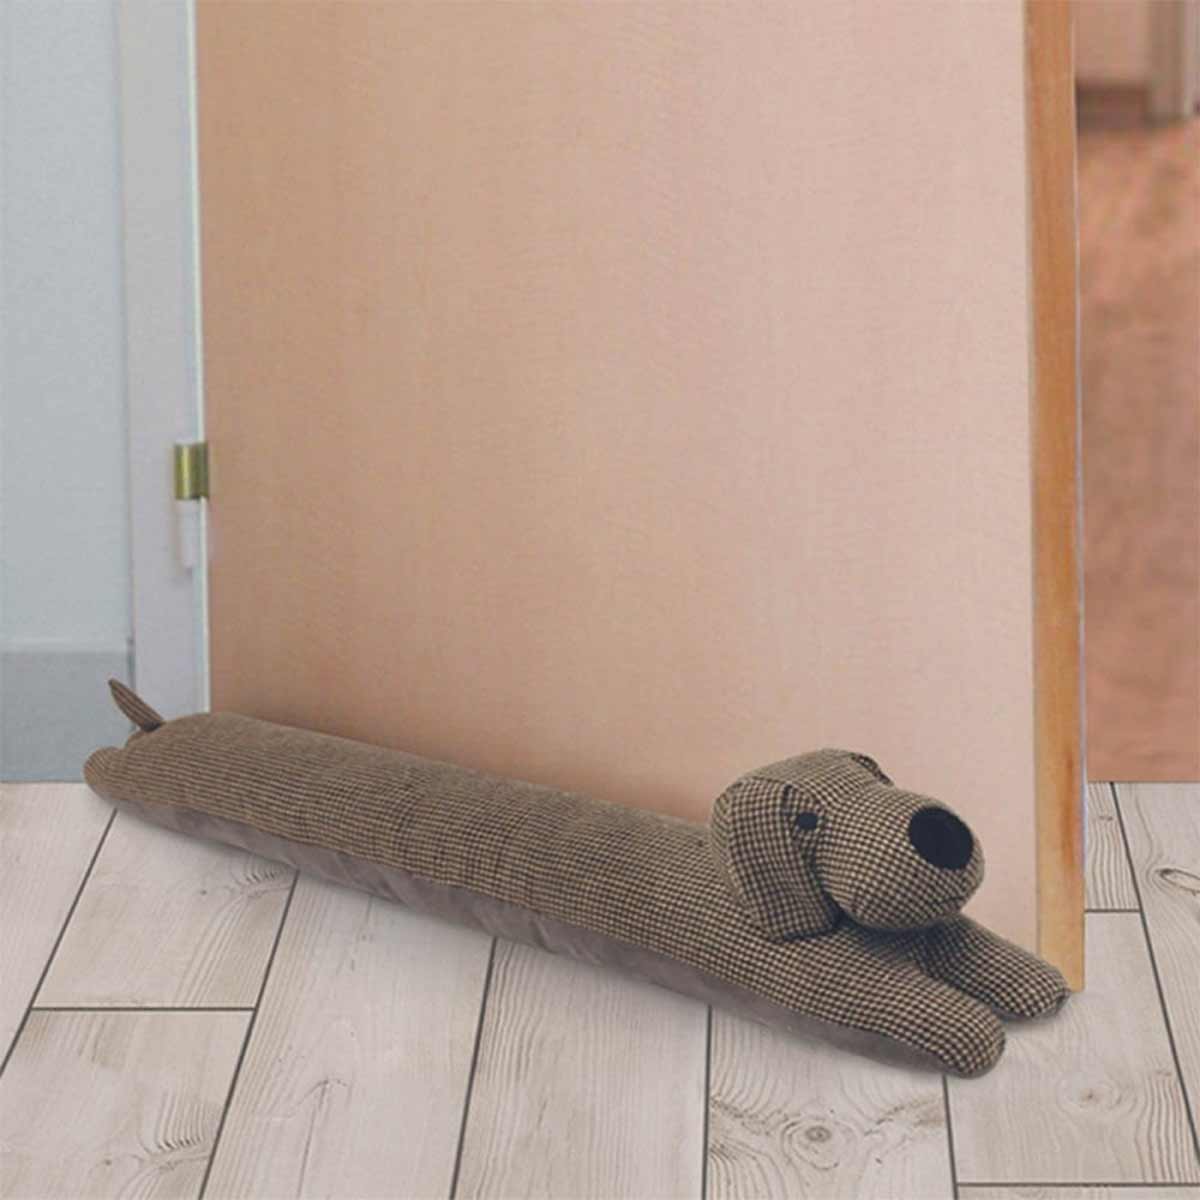 Brown dog door cushion